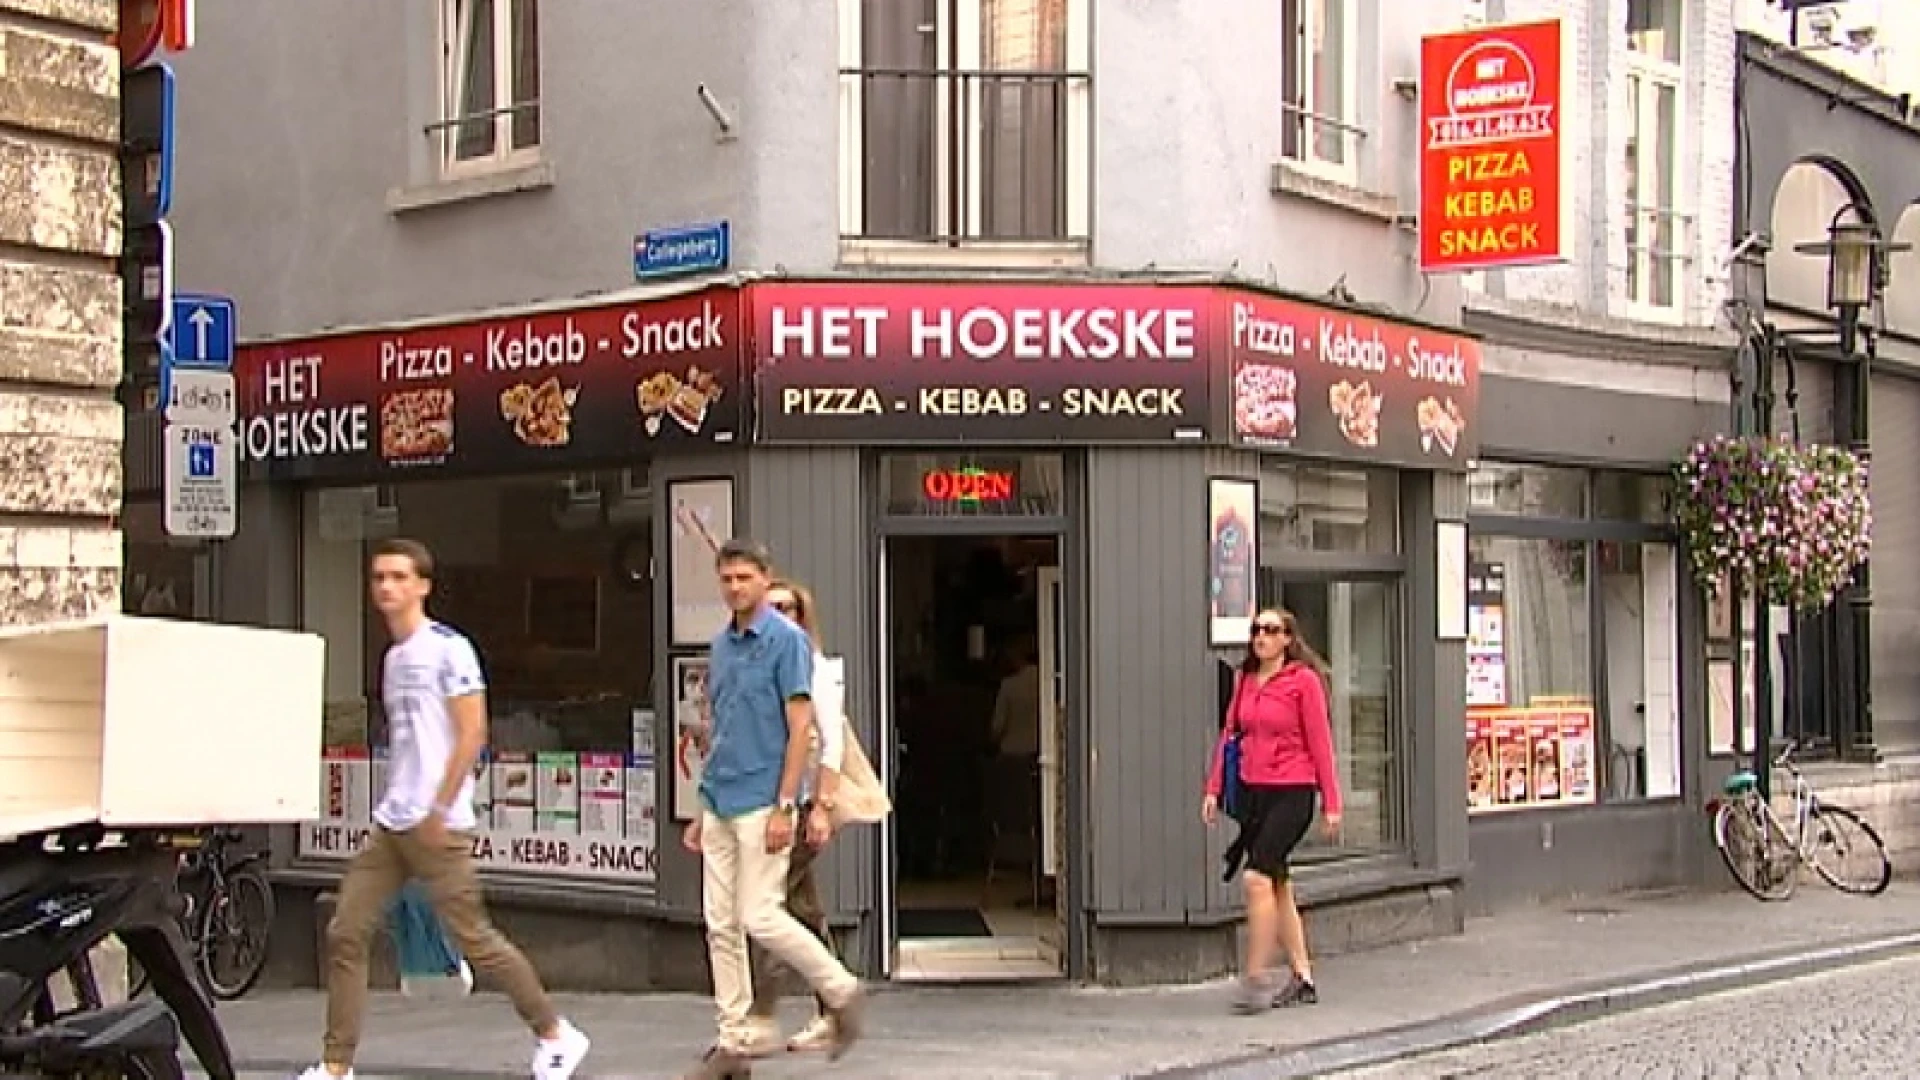 Homokoppel krijgt het aan de stok in snackbar in Leuven